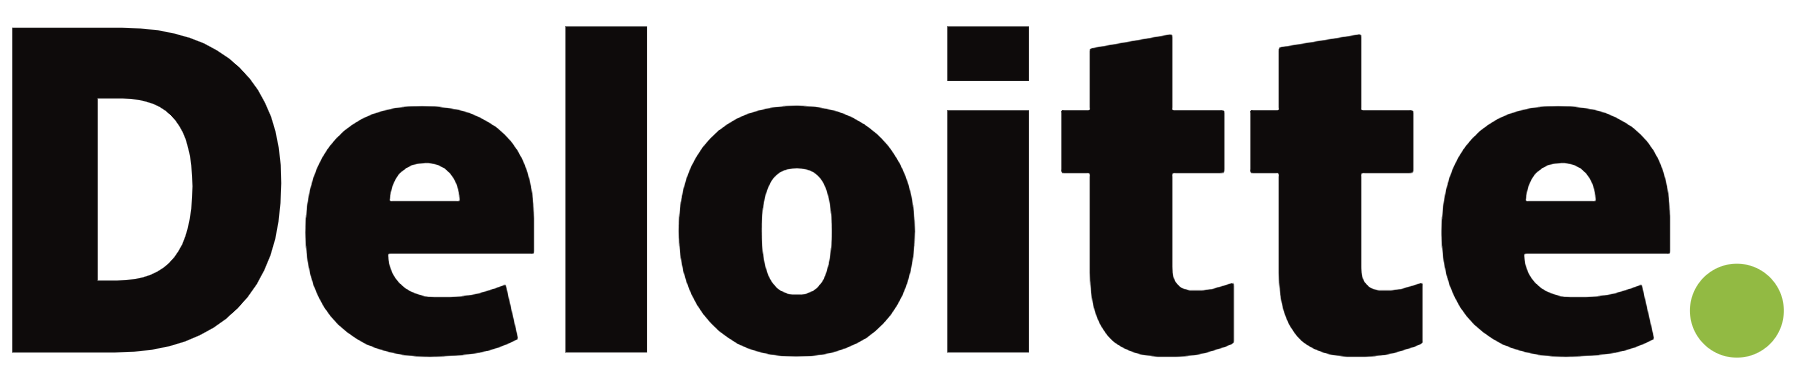 Deloitte Logo.png